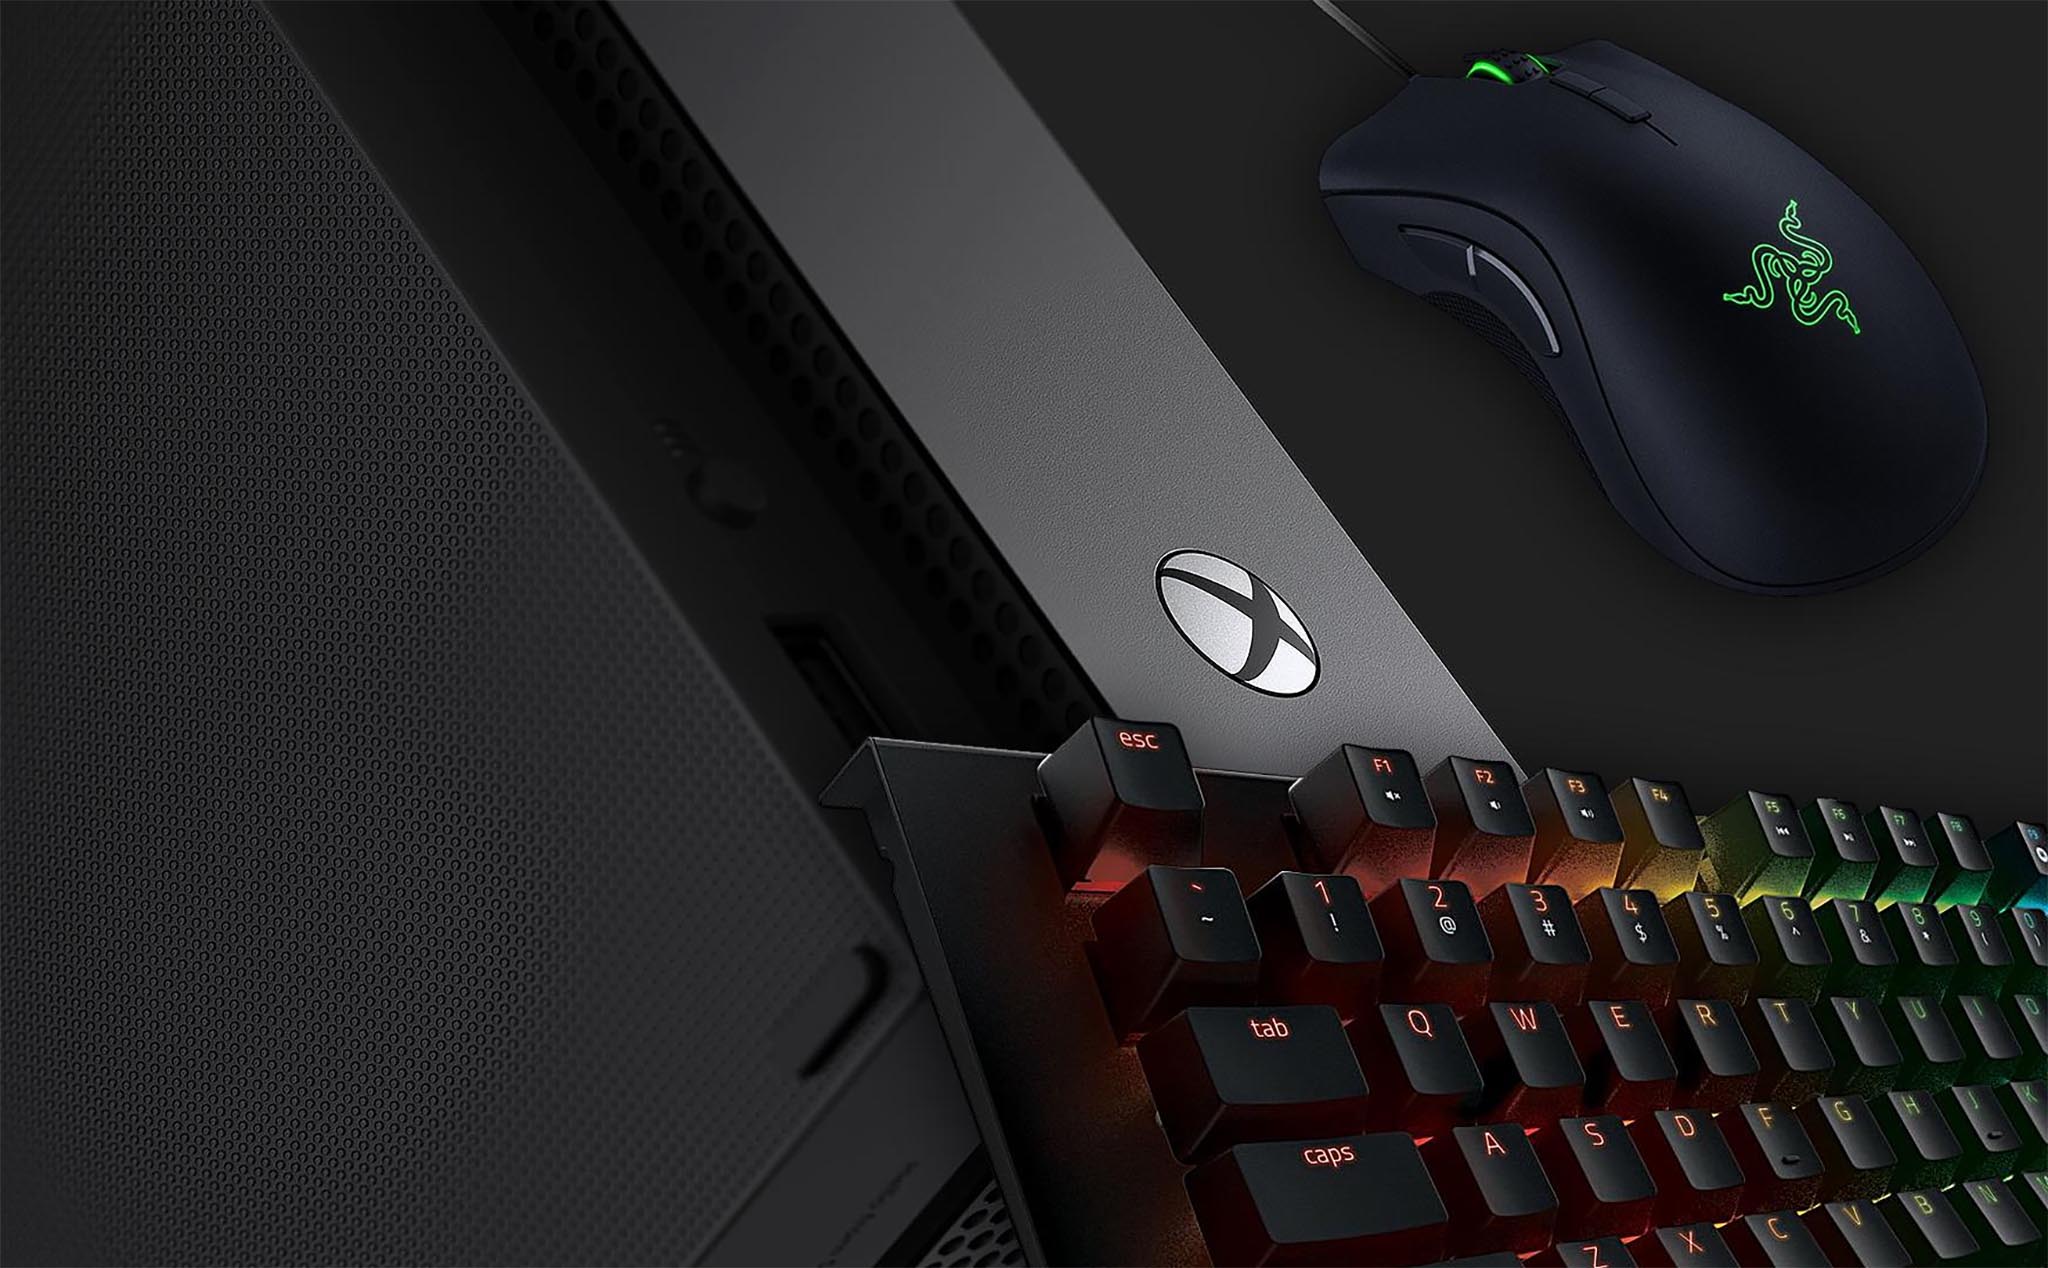 Razer hé lộ hình ảnh bộ đôi bàn phím/chuột đầu tiên cho hệ máy console Xbox One